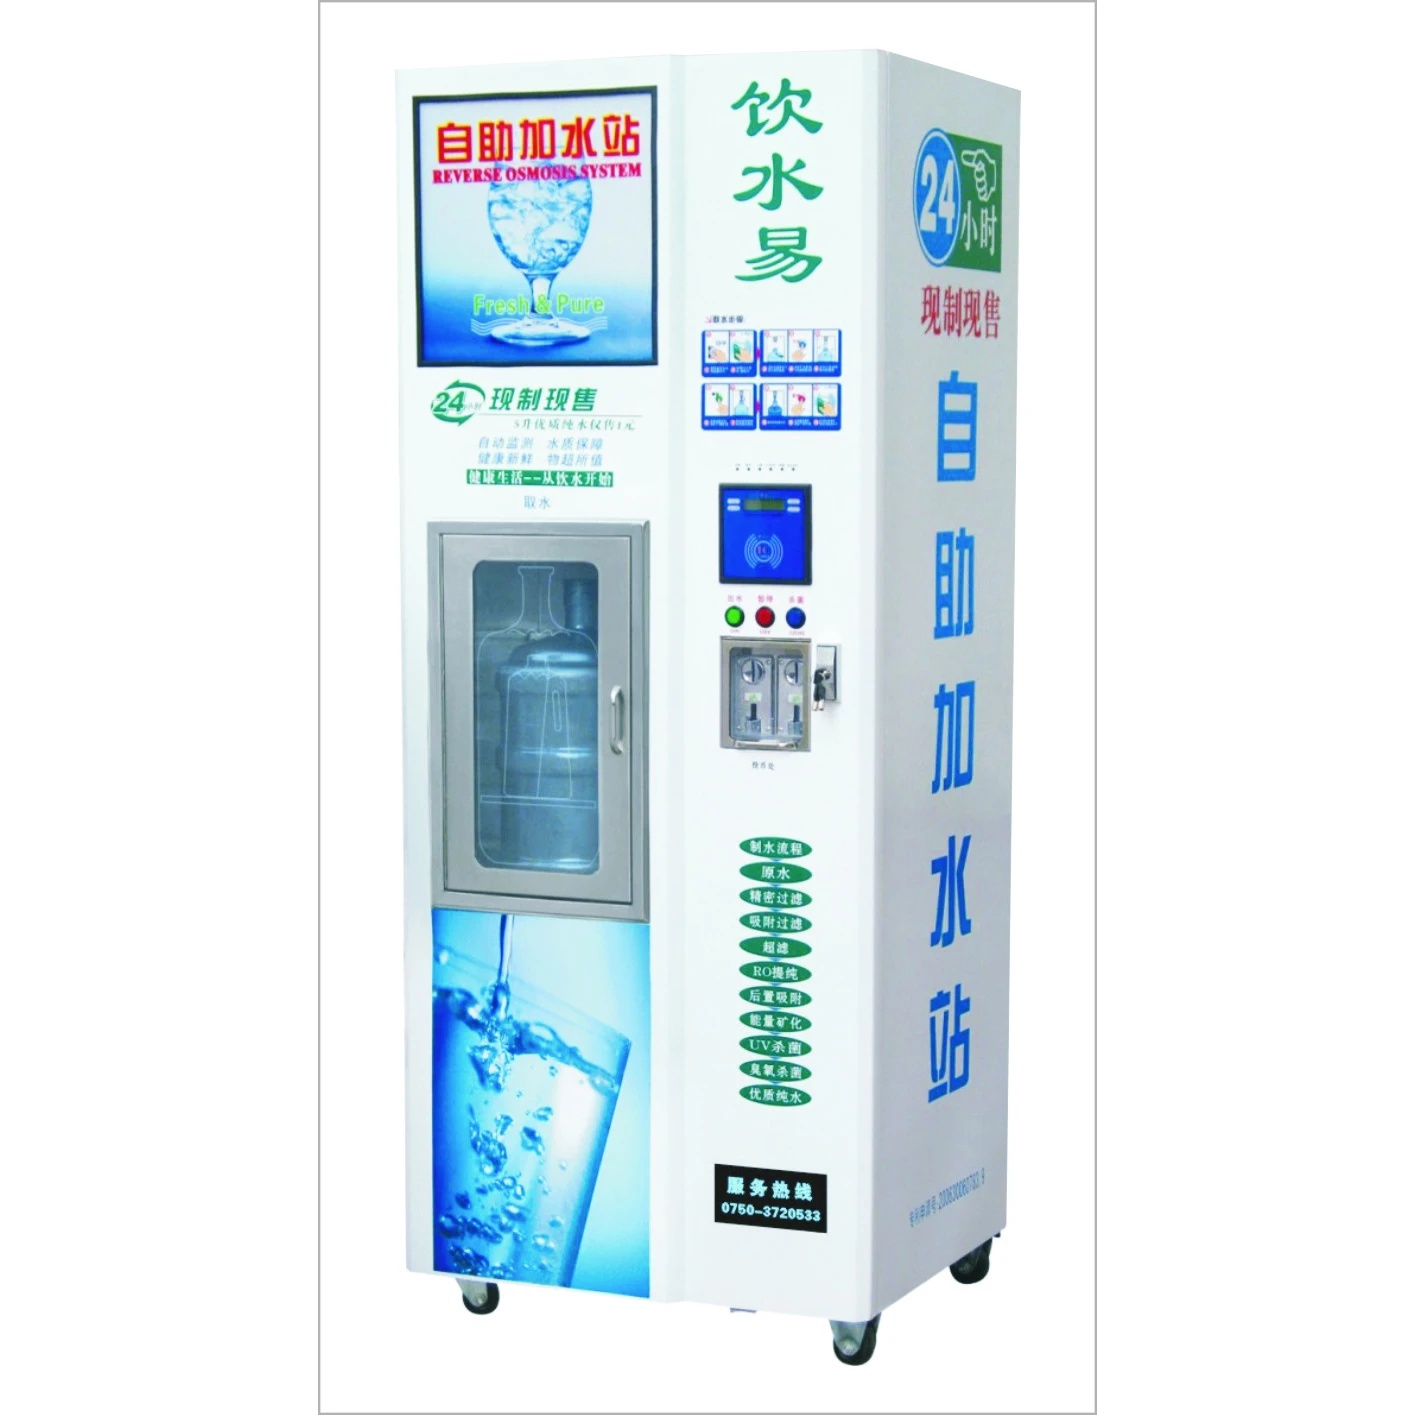 Автомат торговый для воды ro 300a (+LCD). Автомат для питьевой воды Lamo. Вендинговый аппарат доочистки воды Фрост 200. Автомат с бутилированной водой.